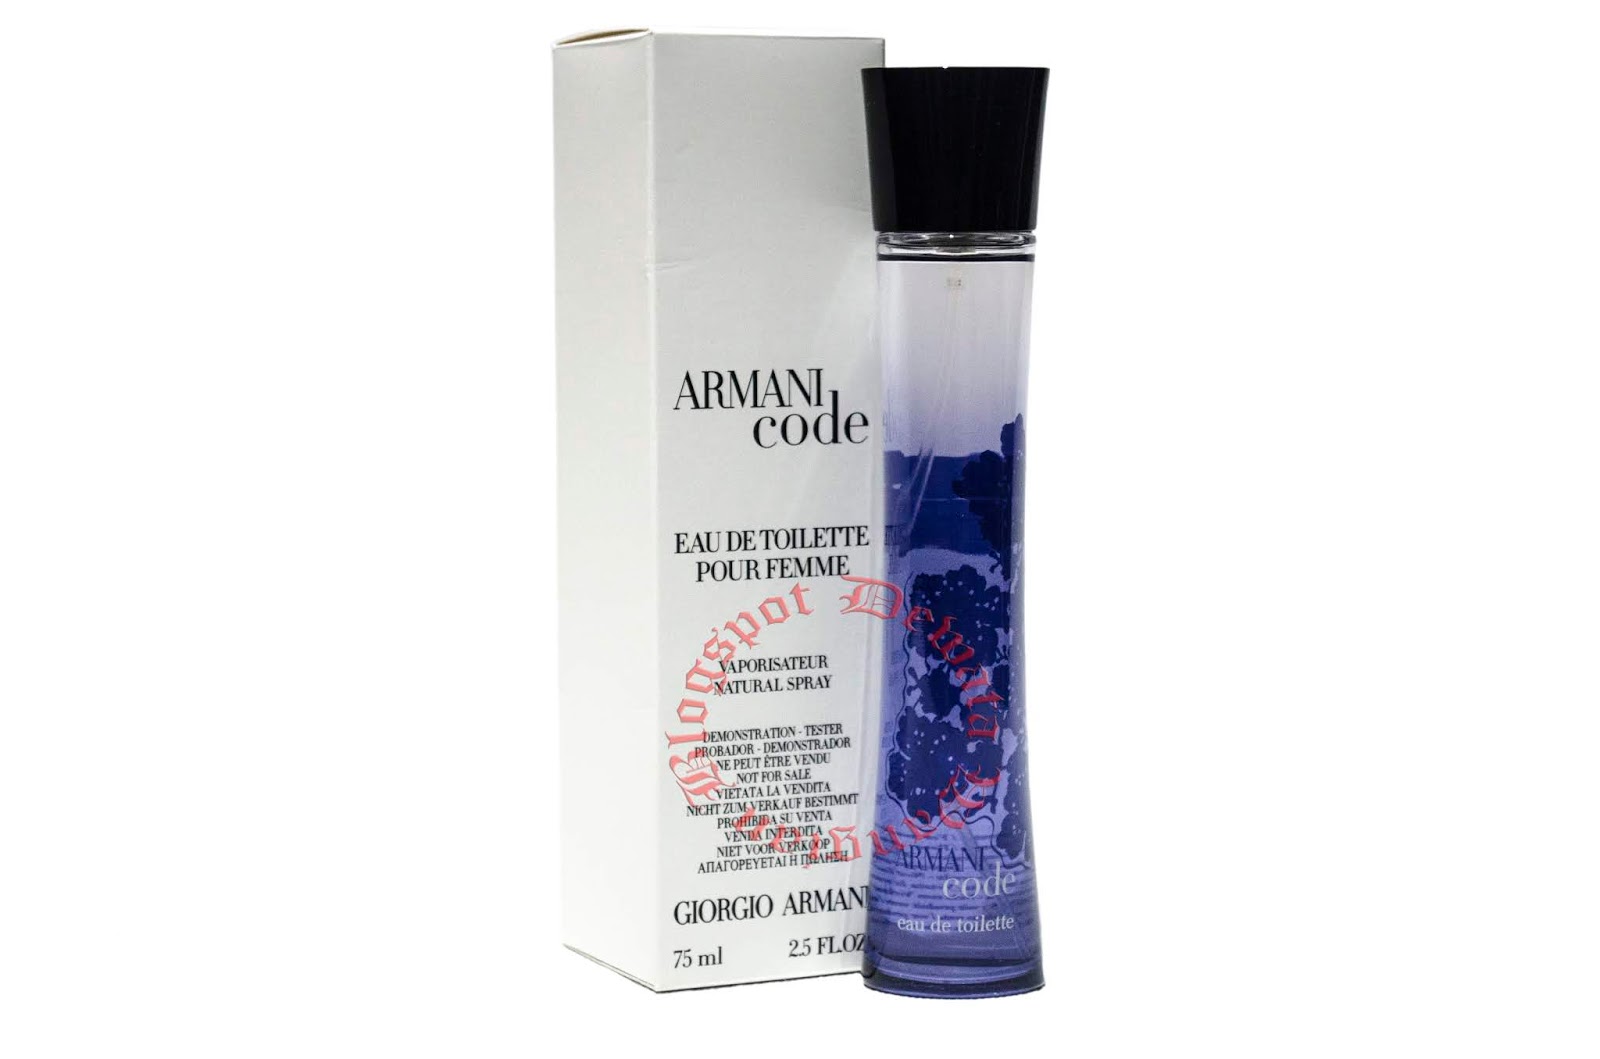 armani code eau de parfum pour femme vaporisateur natural spray